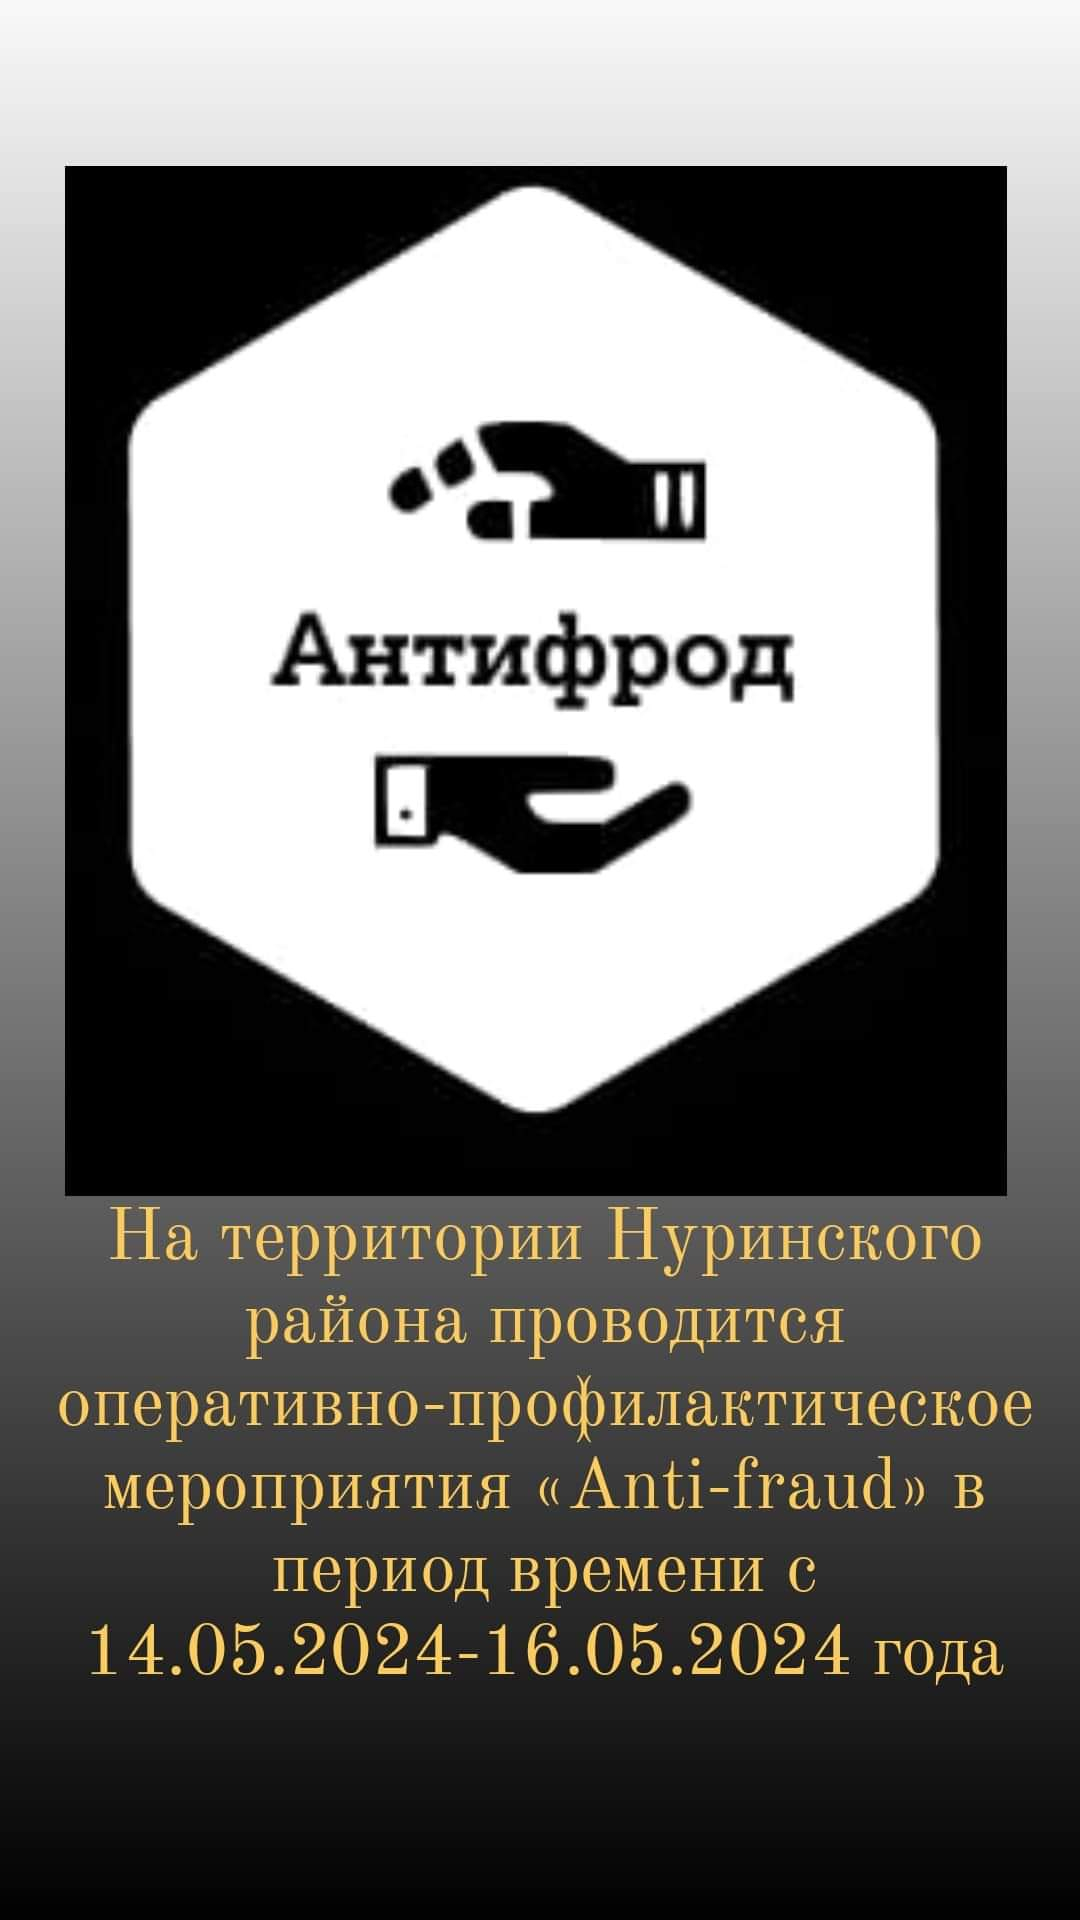 На территории Нуринского района проводится оперативно-профилактическое мероприятие «Anti-fraud».